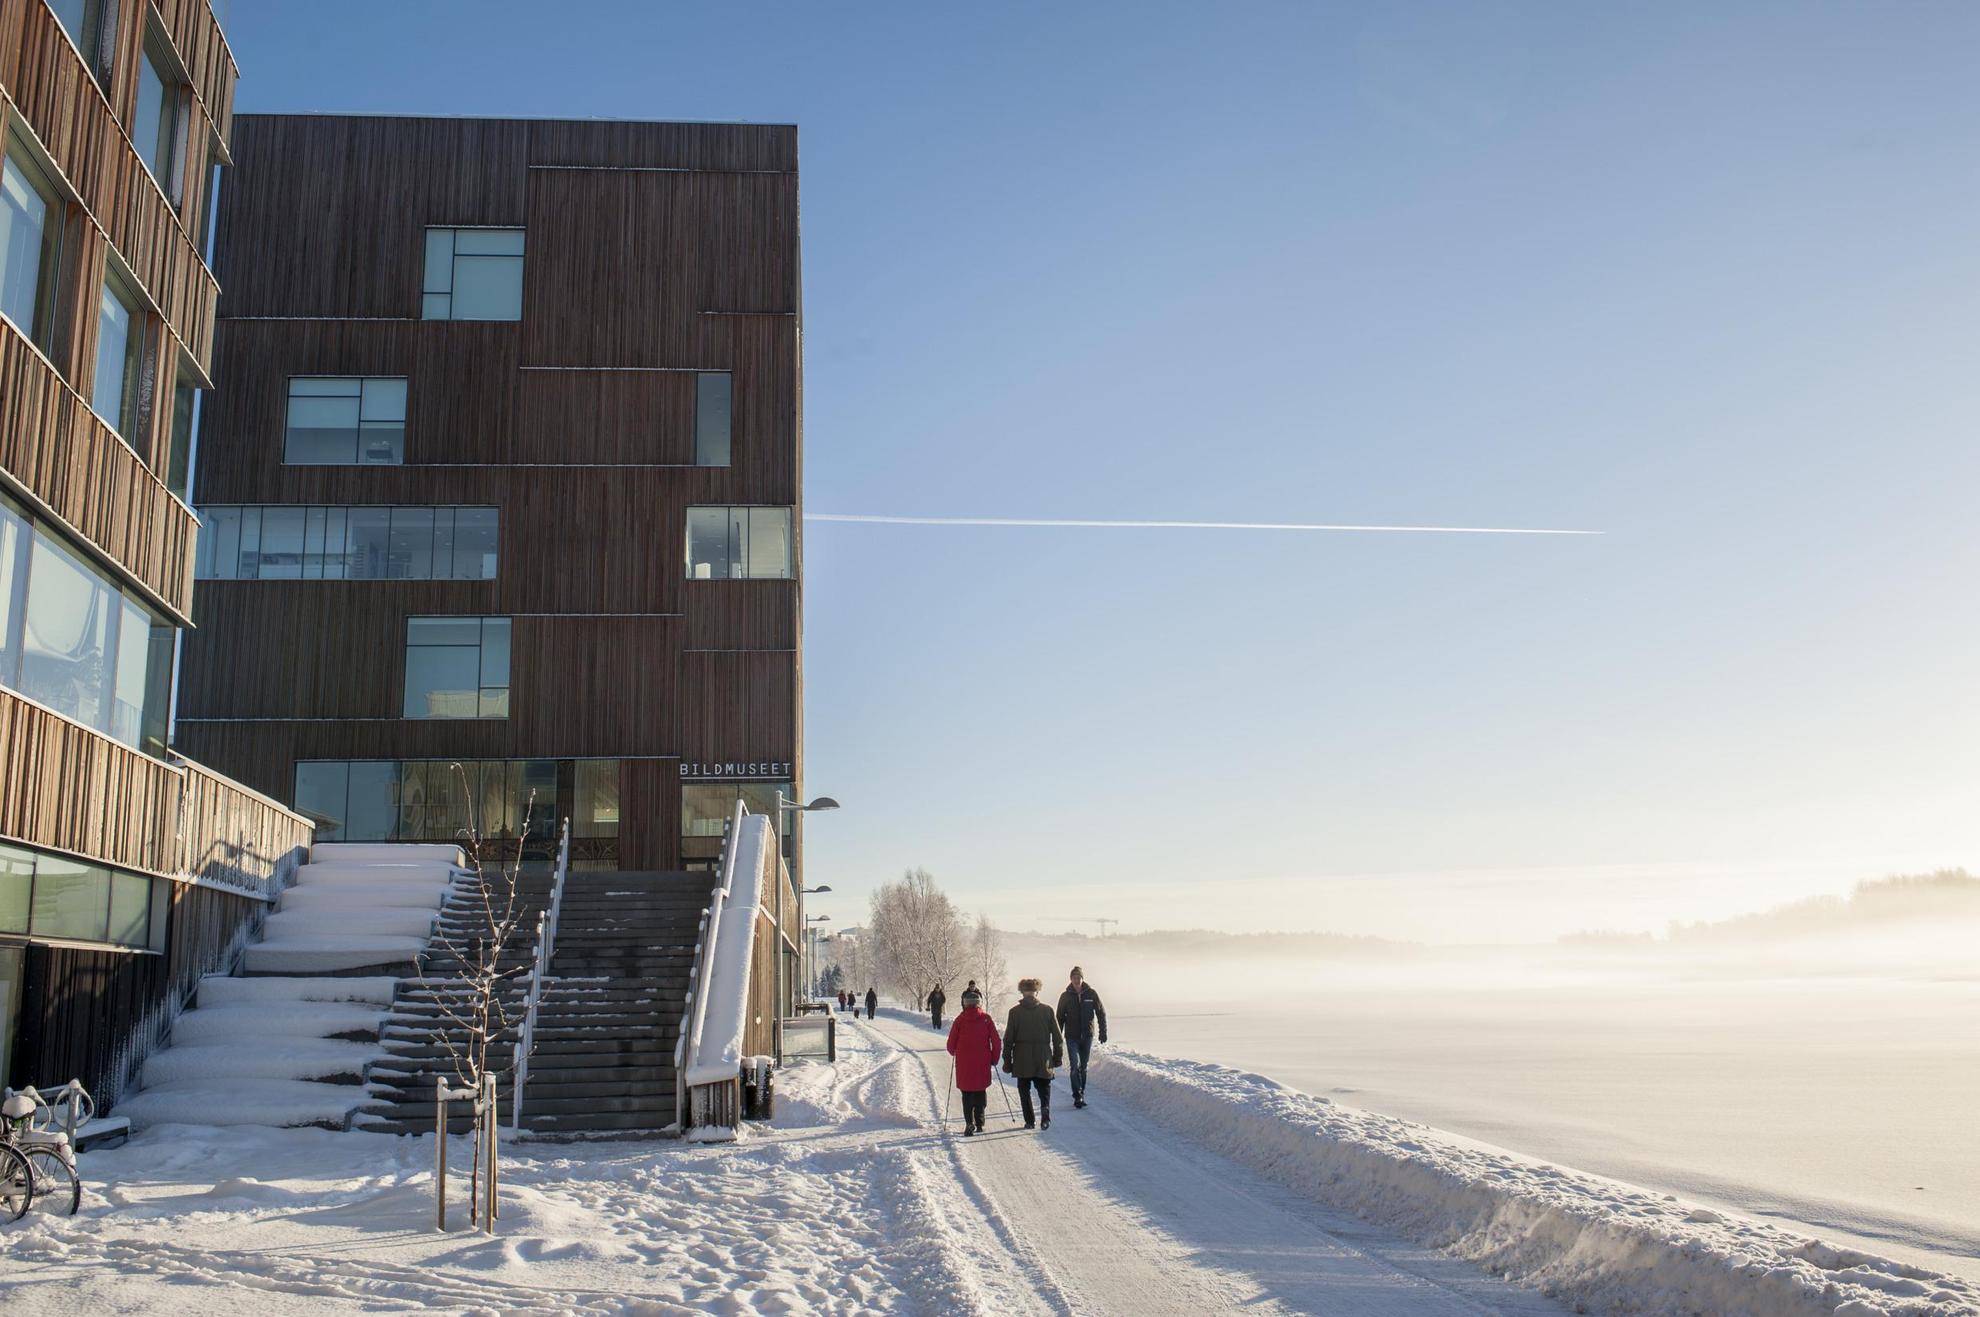 Außenansicht des Bildmuseet in Umeå an einem verschneiten Tag.